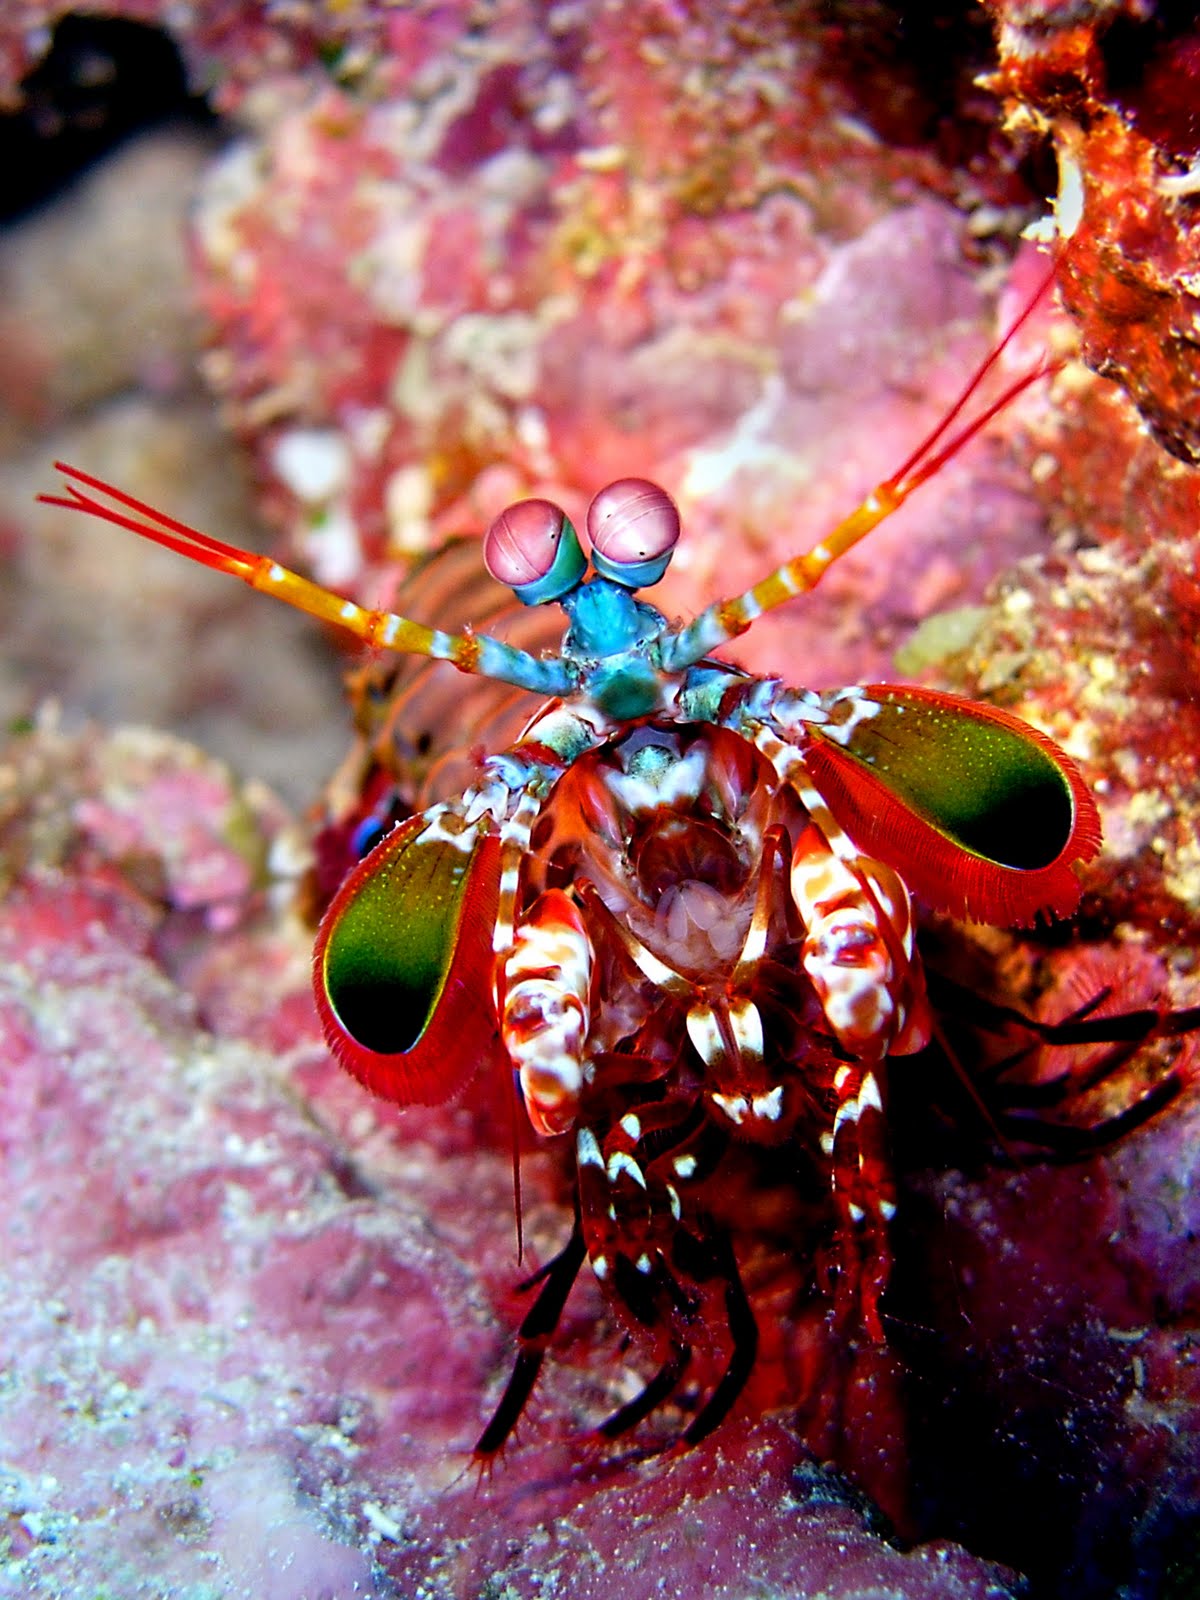 میگوی آخوندکی | mantis shrimp! (+تصـآویر) 1